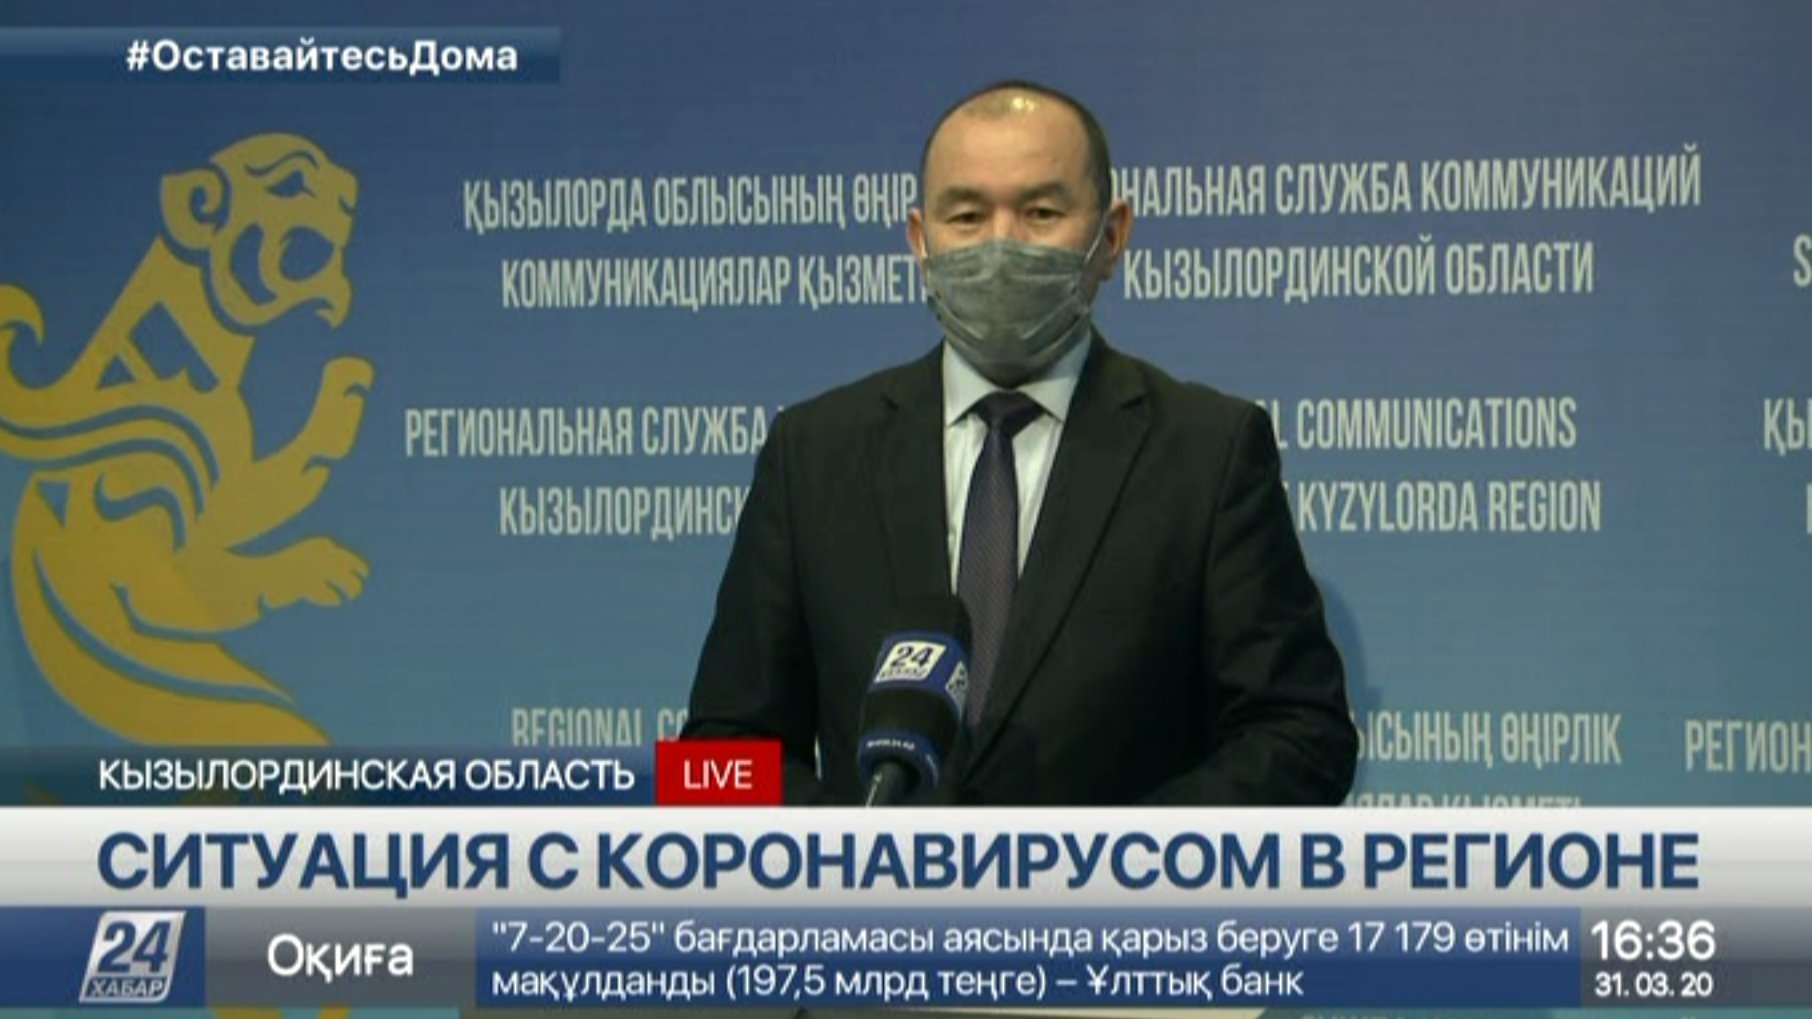 Официально: 18 случаев заражения коронавирусом в Кызылординской области